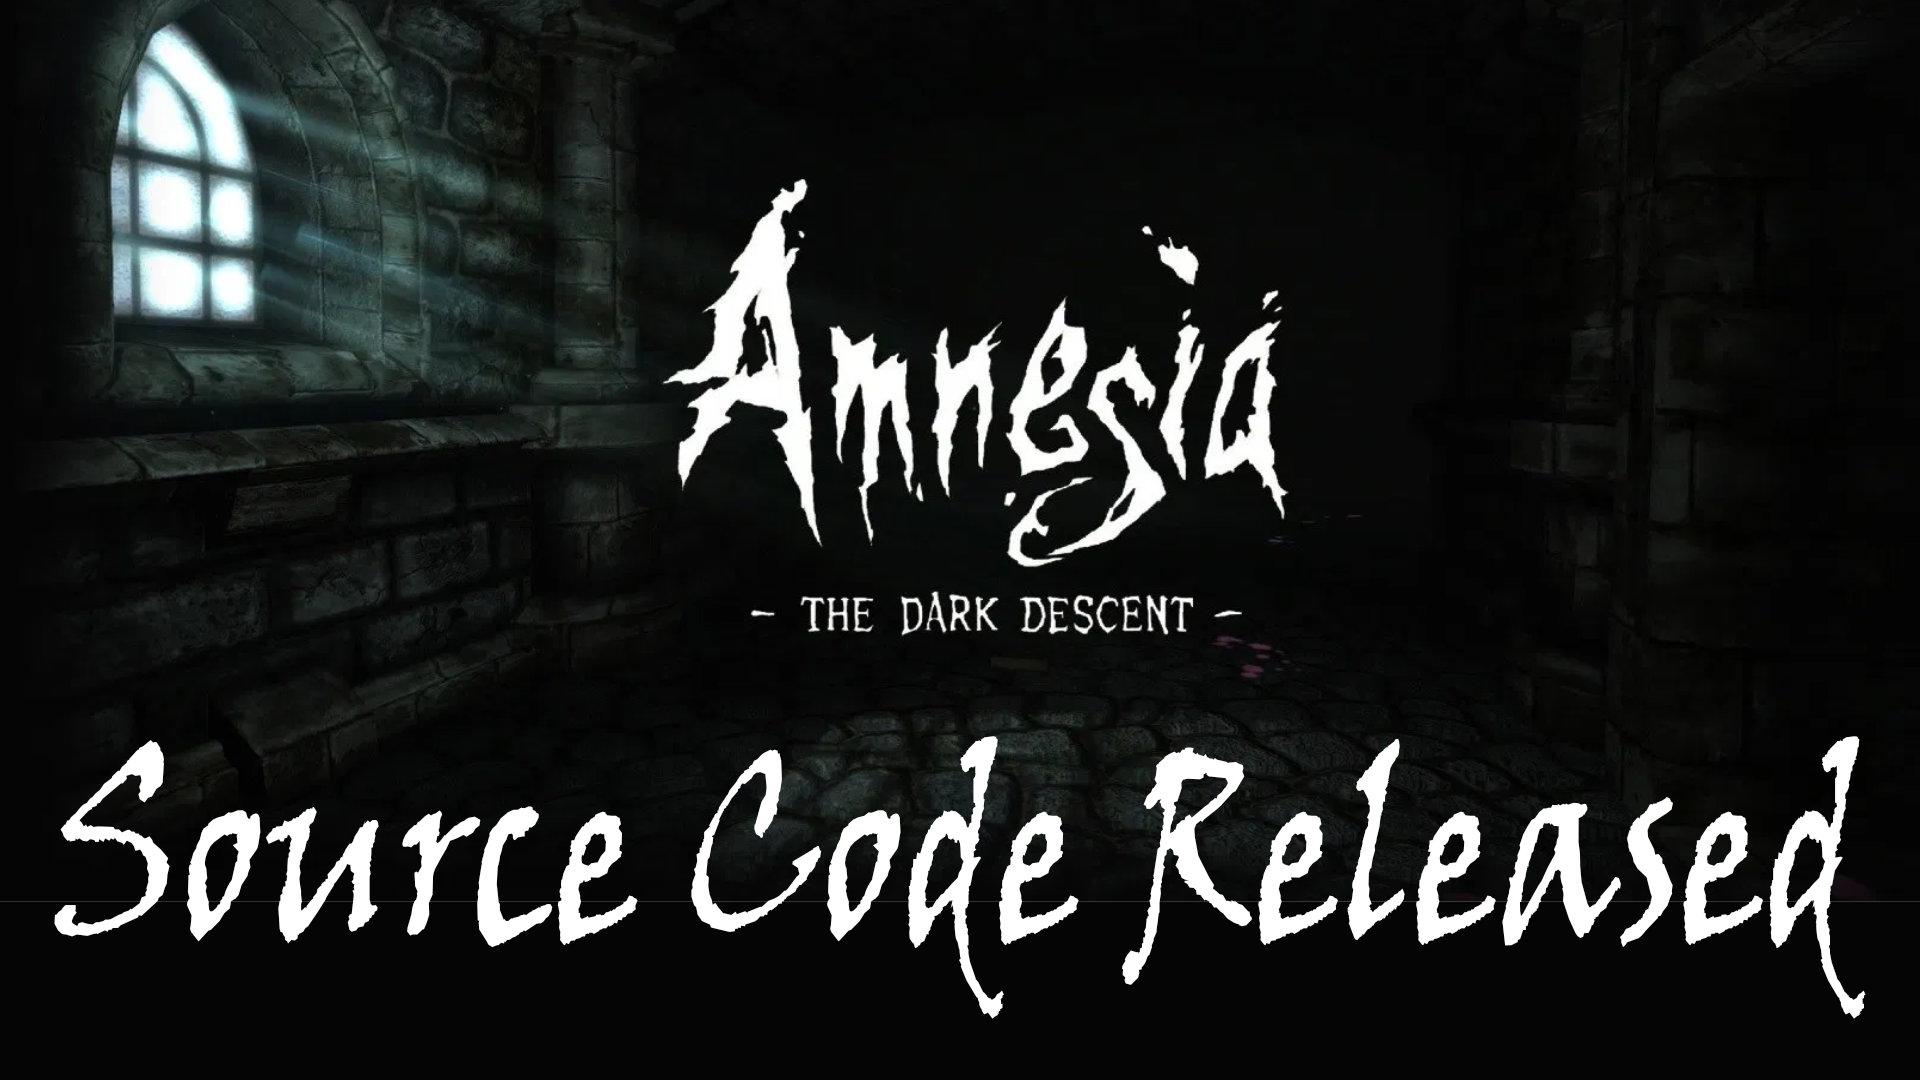 free download amnesia the dark descent amnesia a machine for pigs